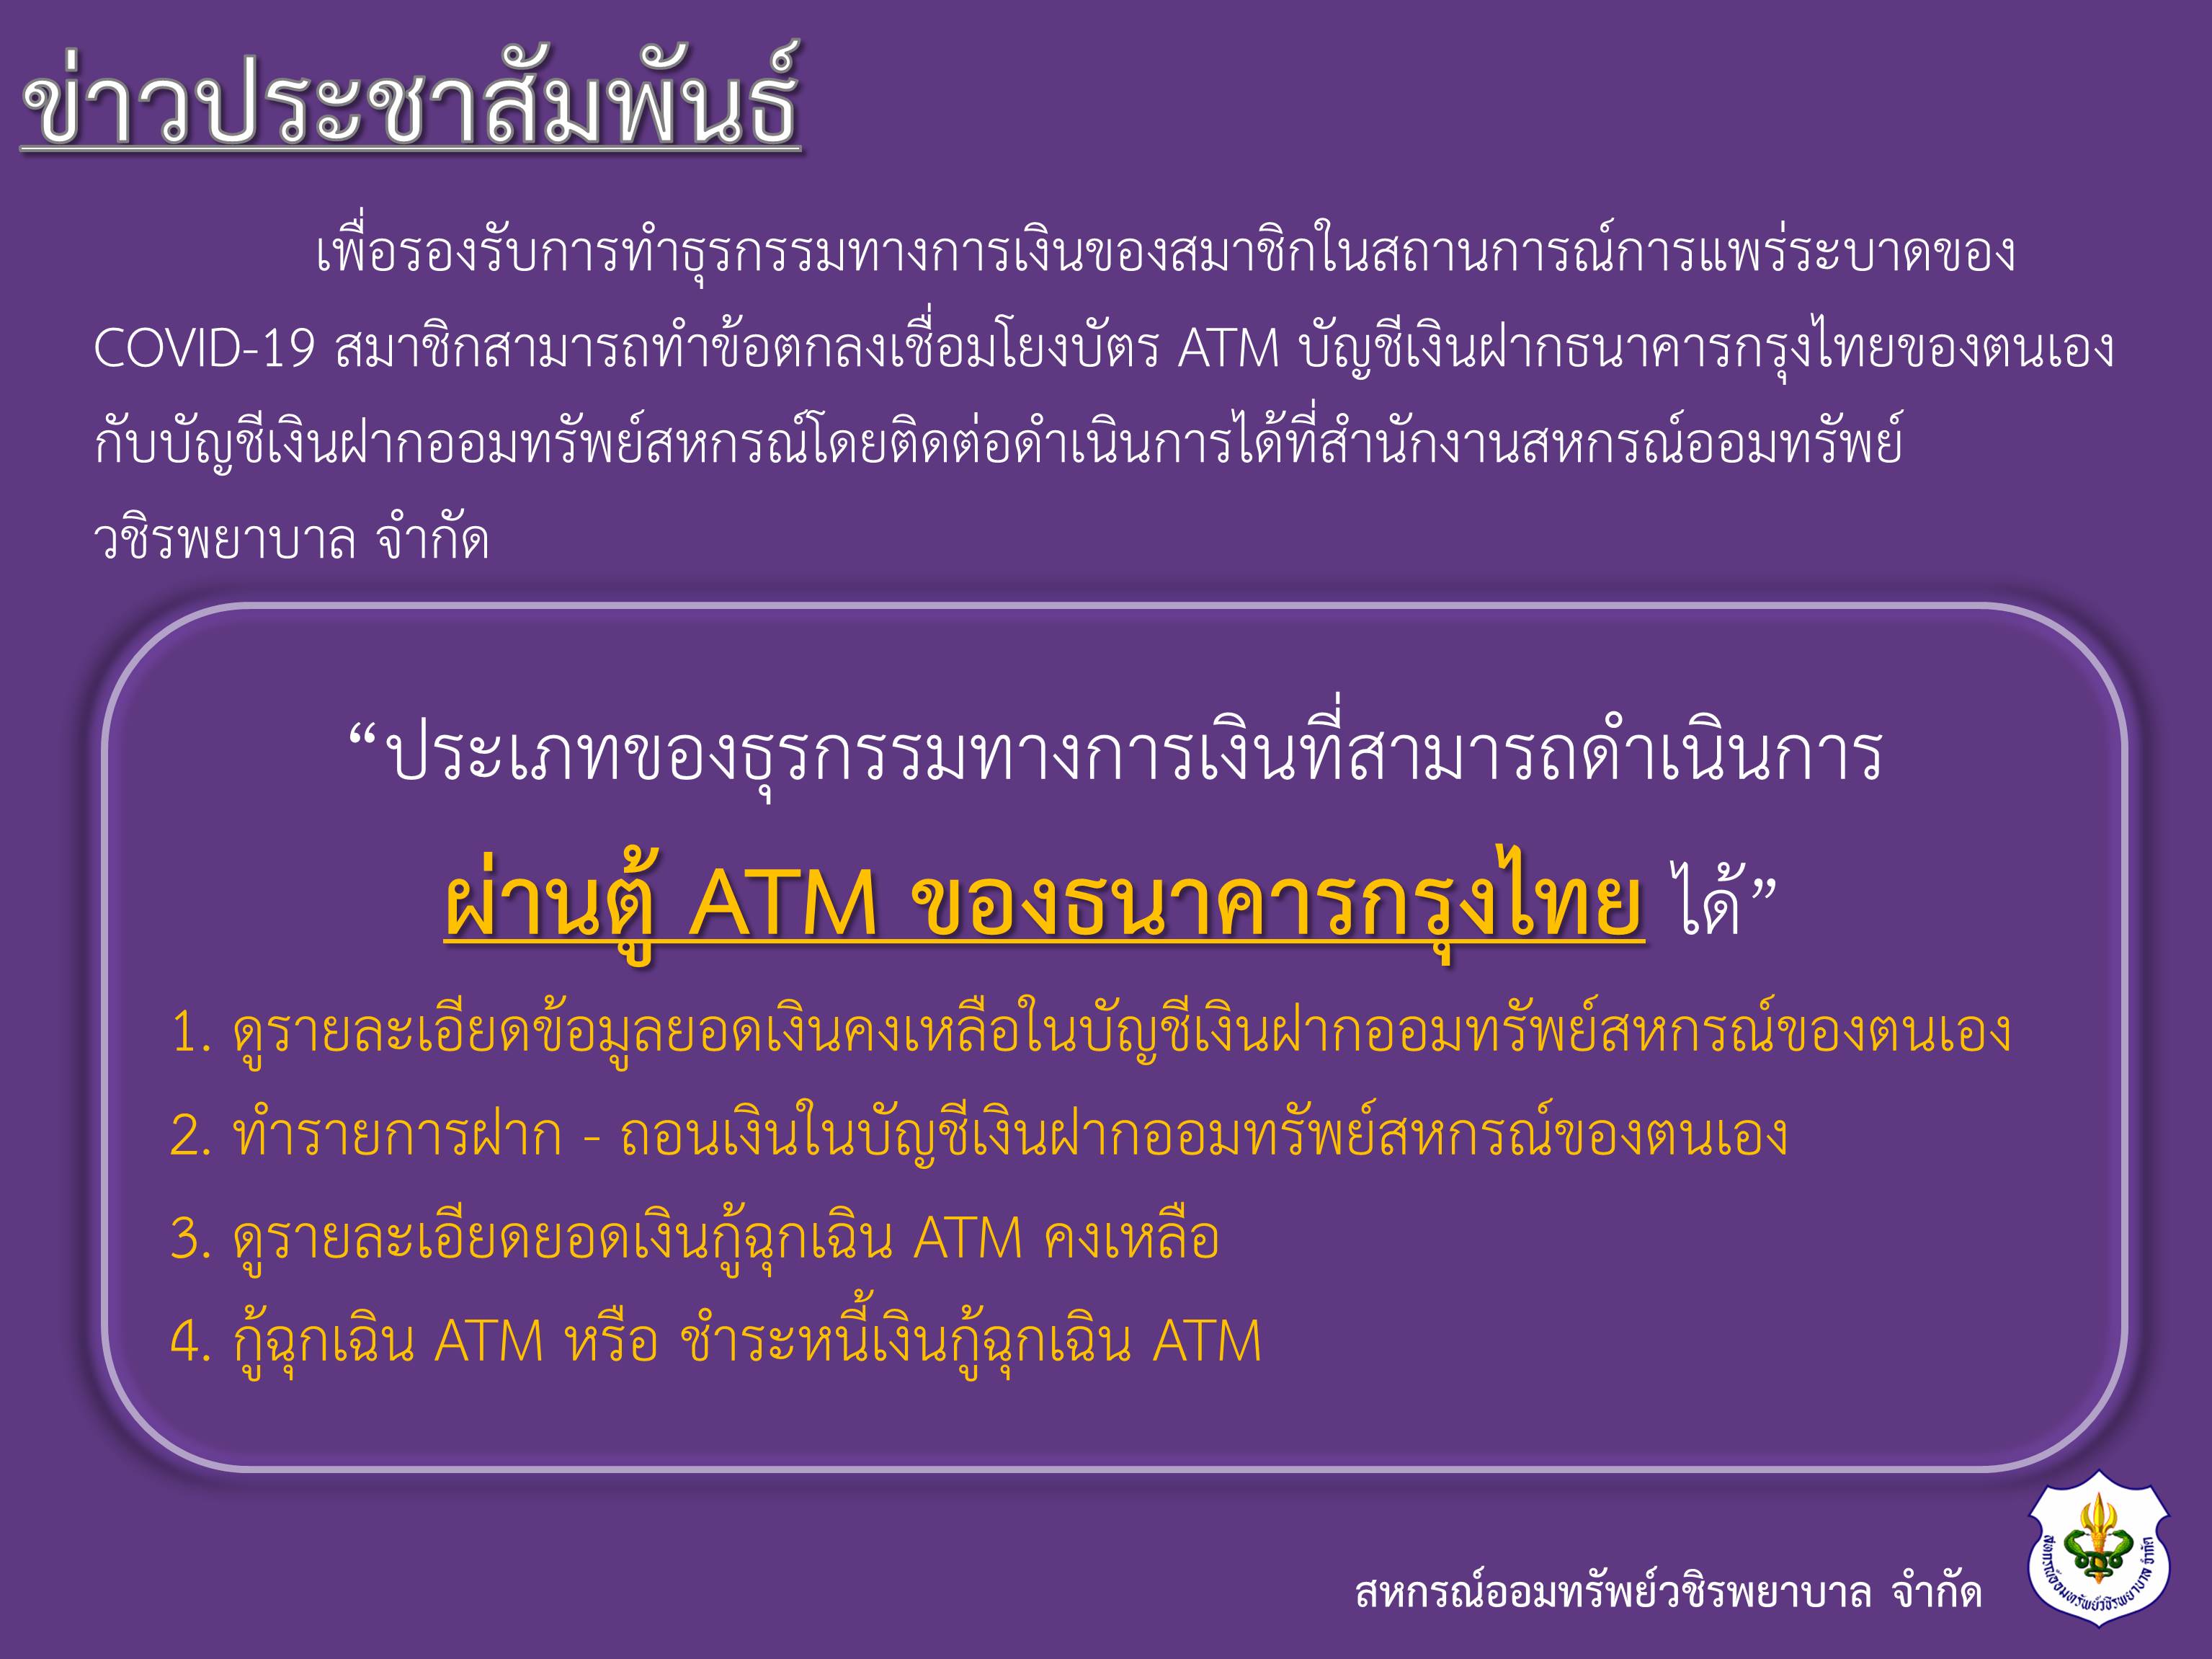 ประเภทของธุรกรรมทางการเงินที่สามารถดำเนินการผ่านตู้ ATM ธนาคารกรุงไทย